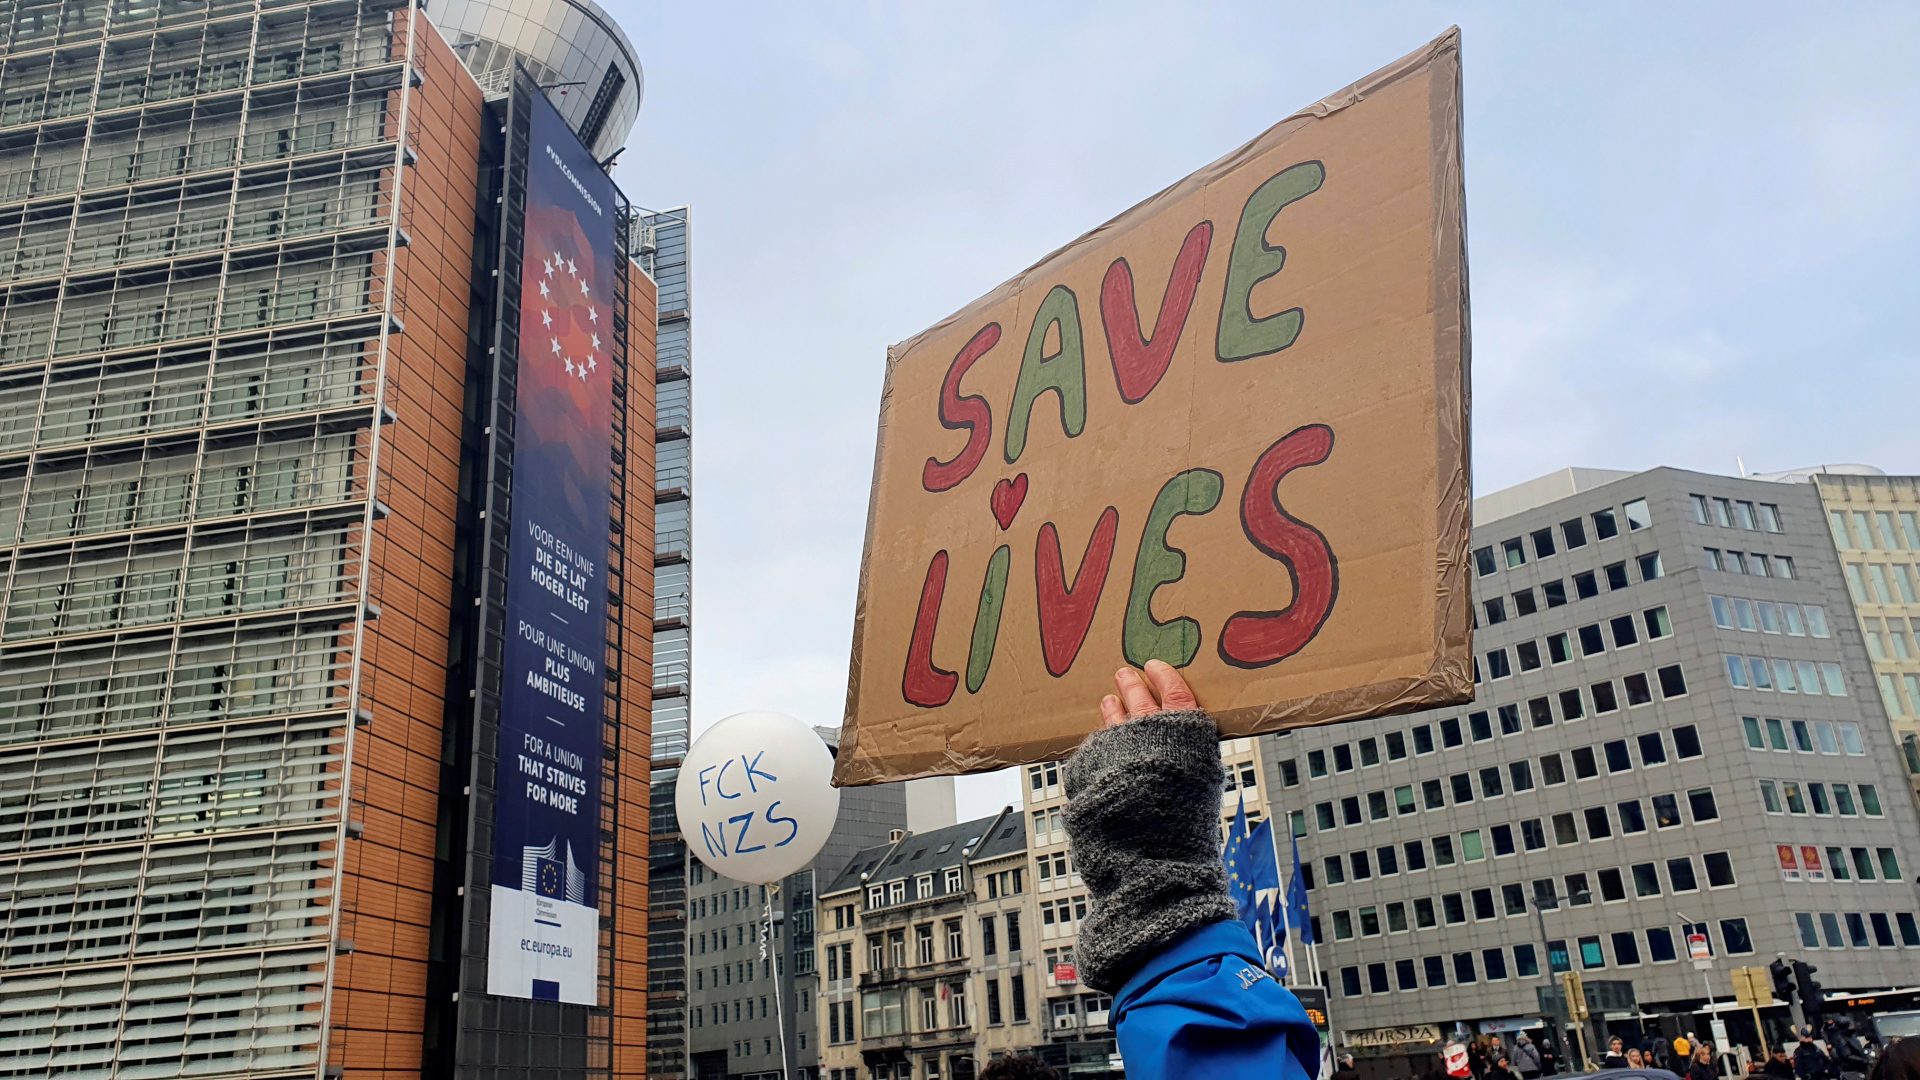 n manifestante sostiene un cartel de la manifestación este martes en Bruselas (Bélgica), en el que puede leerse "Salvad vidas".